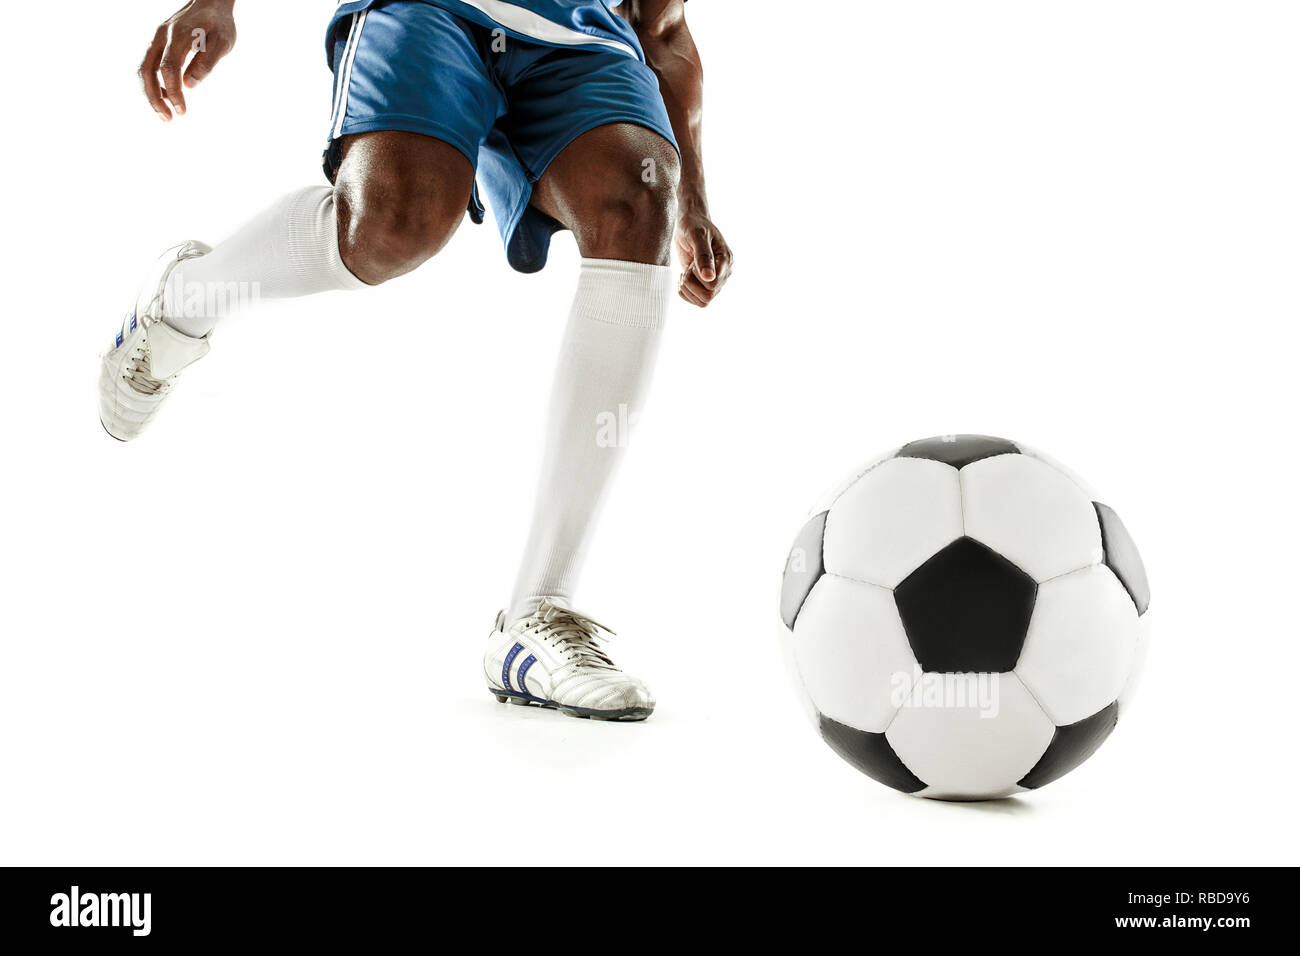 Les jambes de joueur de foot close-up isolé sur blanc. Modèle  afro-américain en action ou mouvement avec le ballon. Le football, sport,  jeu, joueur, sportif, concept de la concurrence Photo Stock -